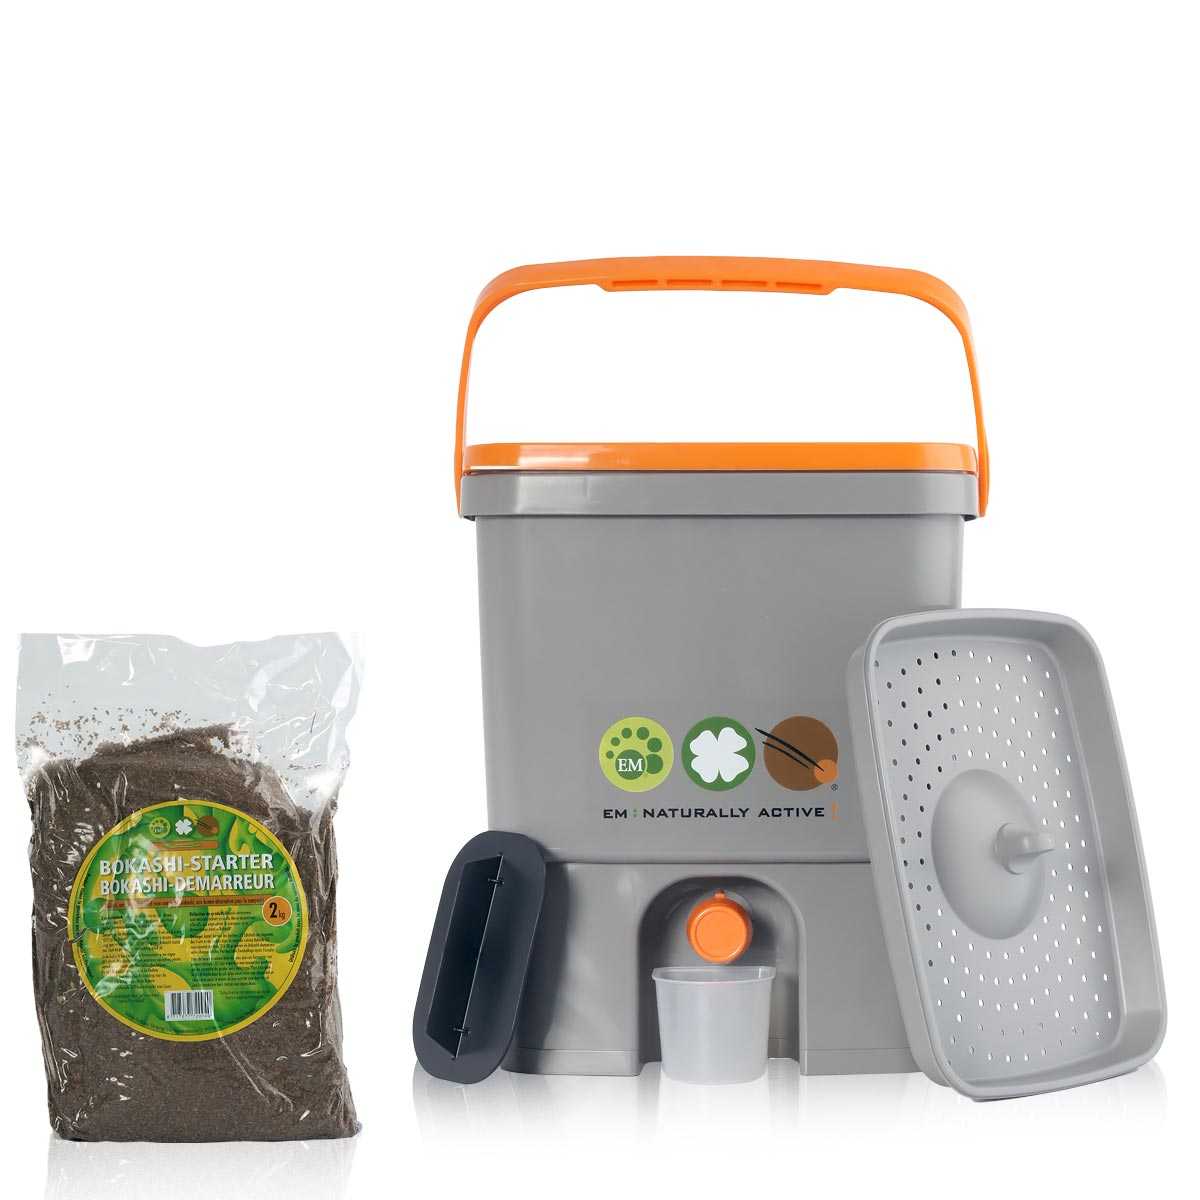 Bokashi Poubelle Organico de compostage pour déchets de cuisine Gris / Vert Poubelle de compostage pour micro-organismes efficaces